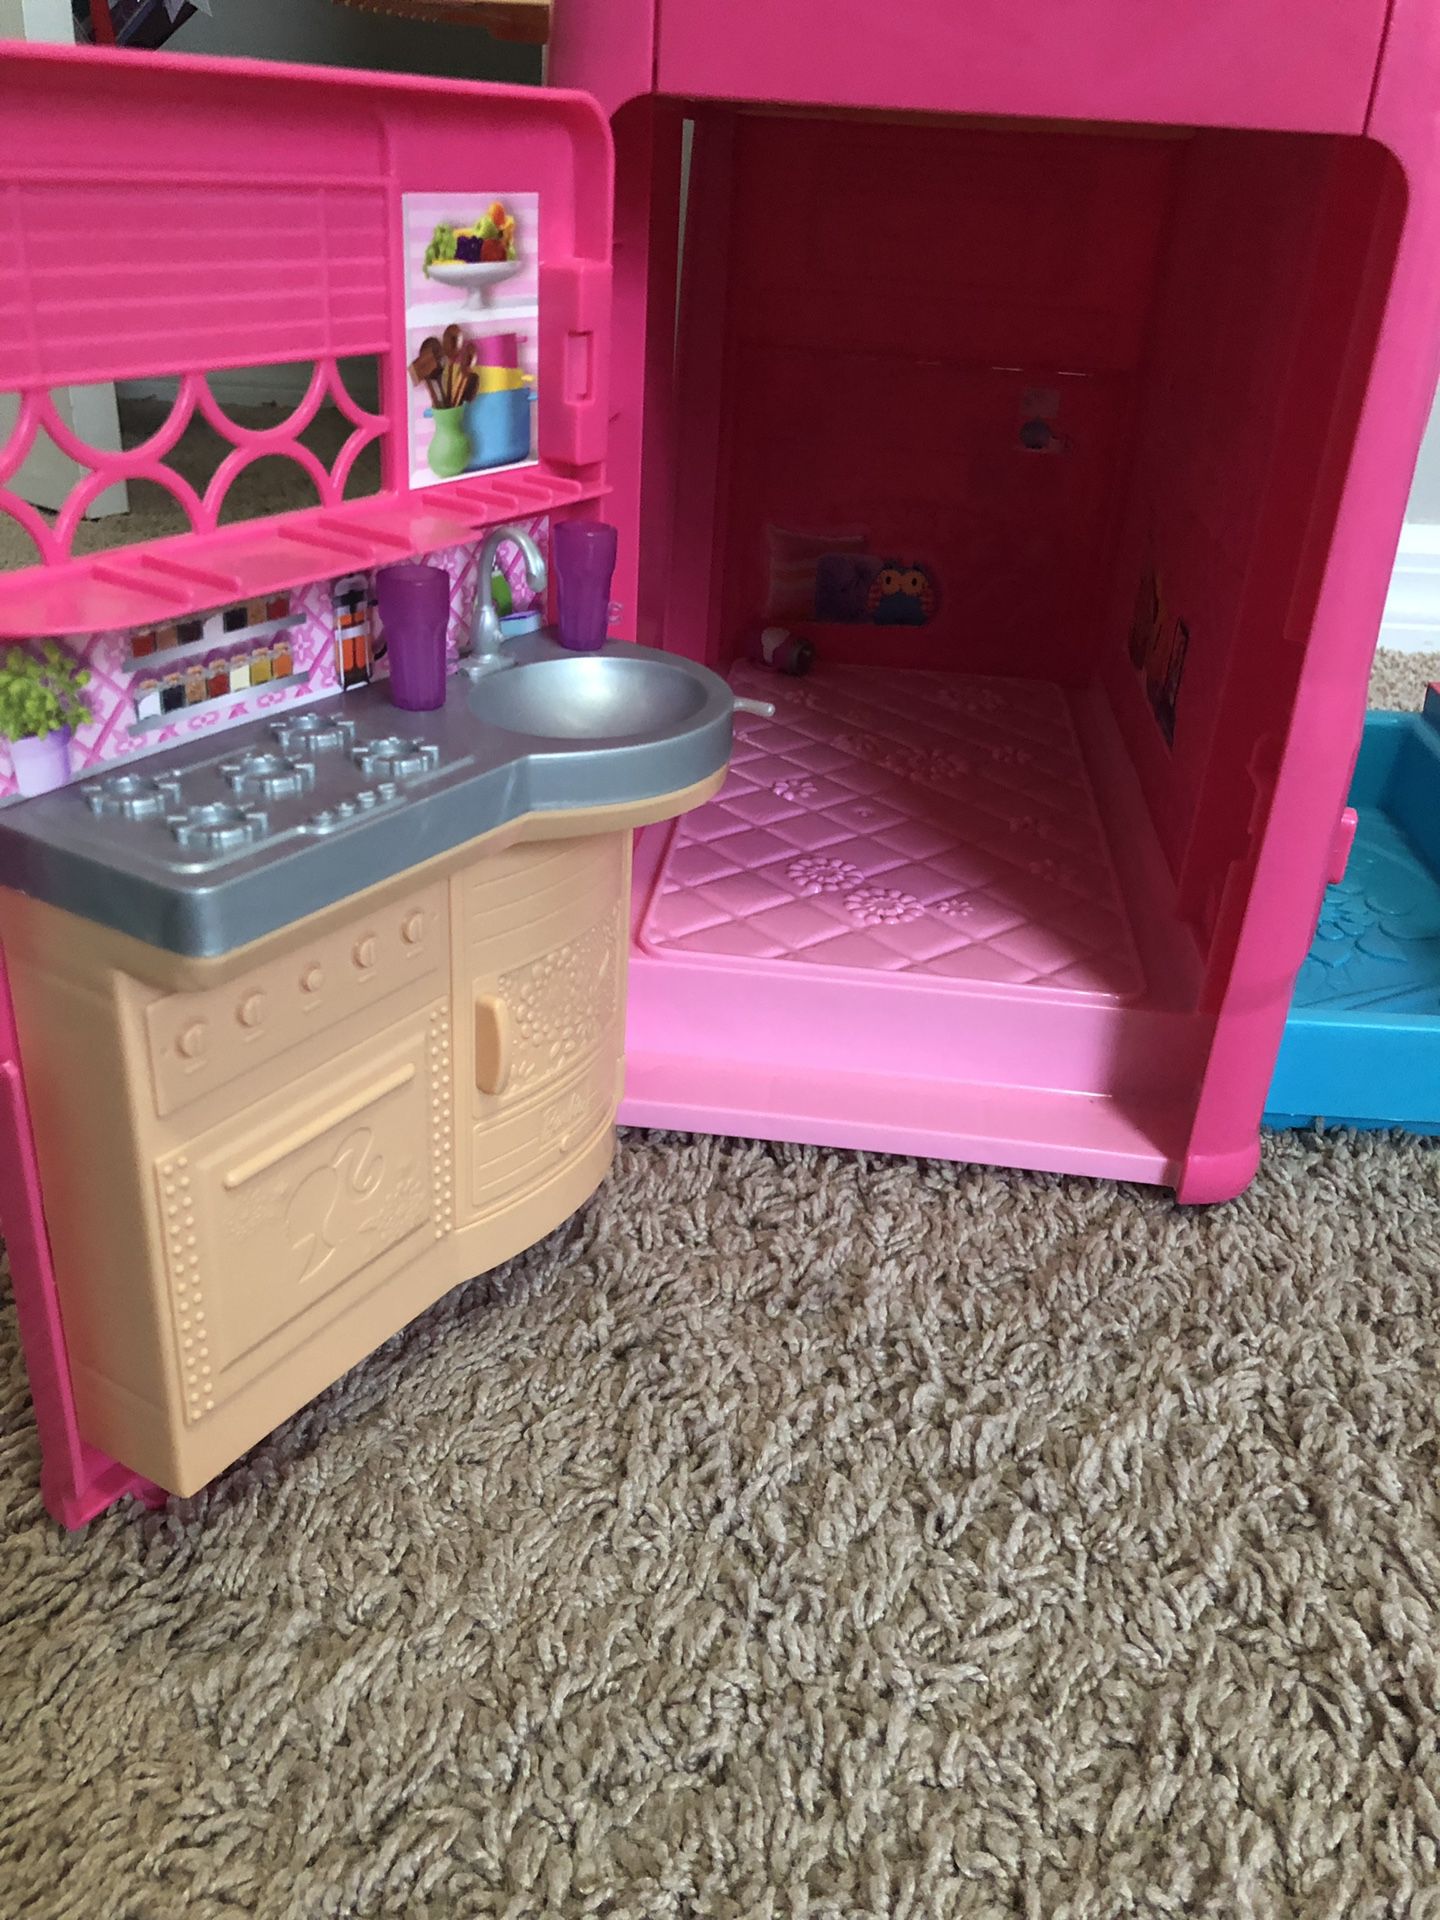 Barbie Camper Van